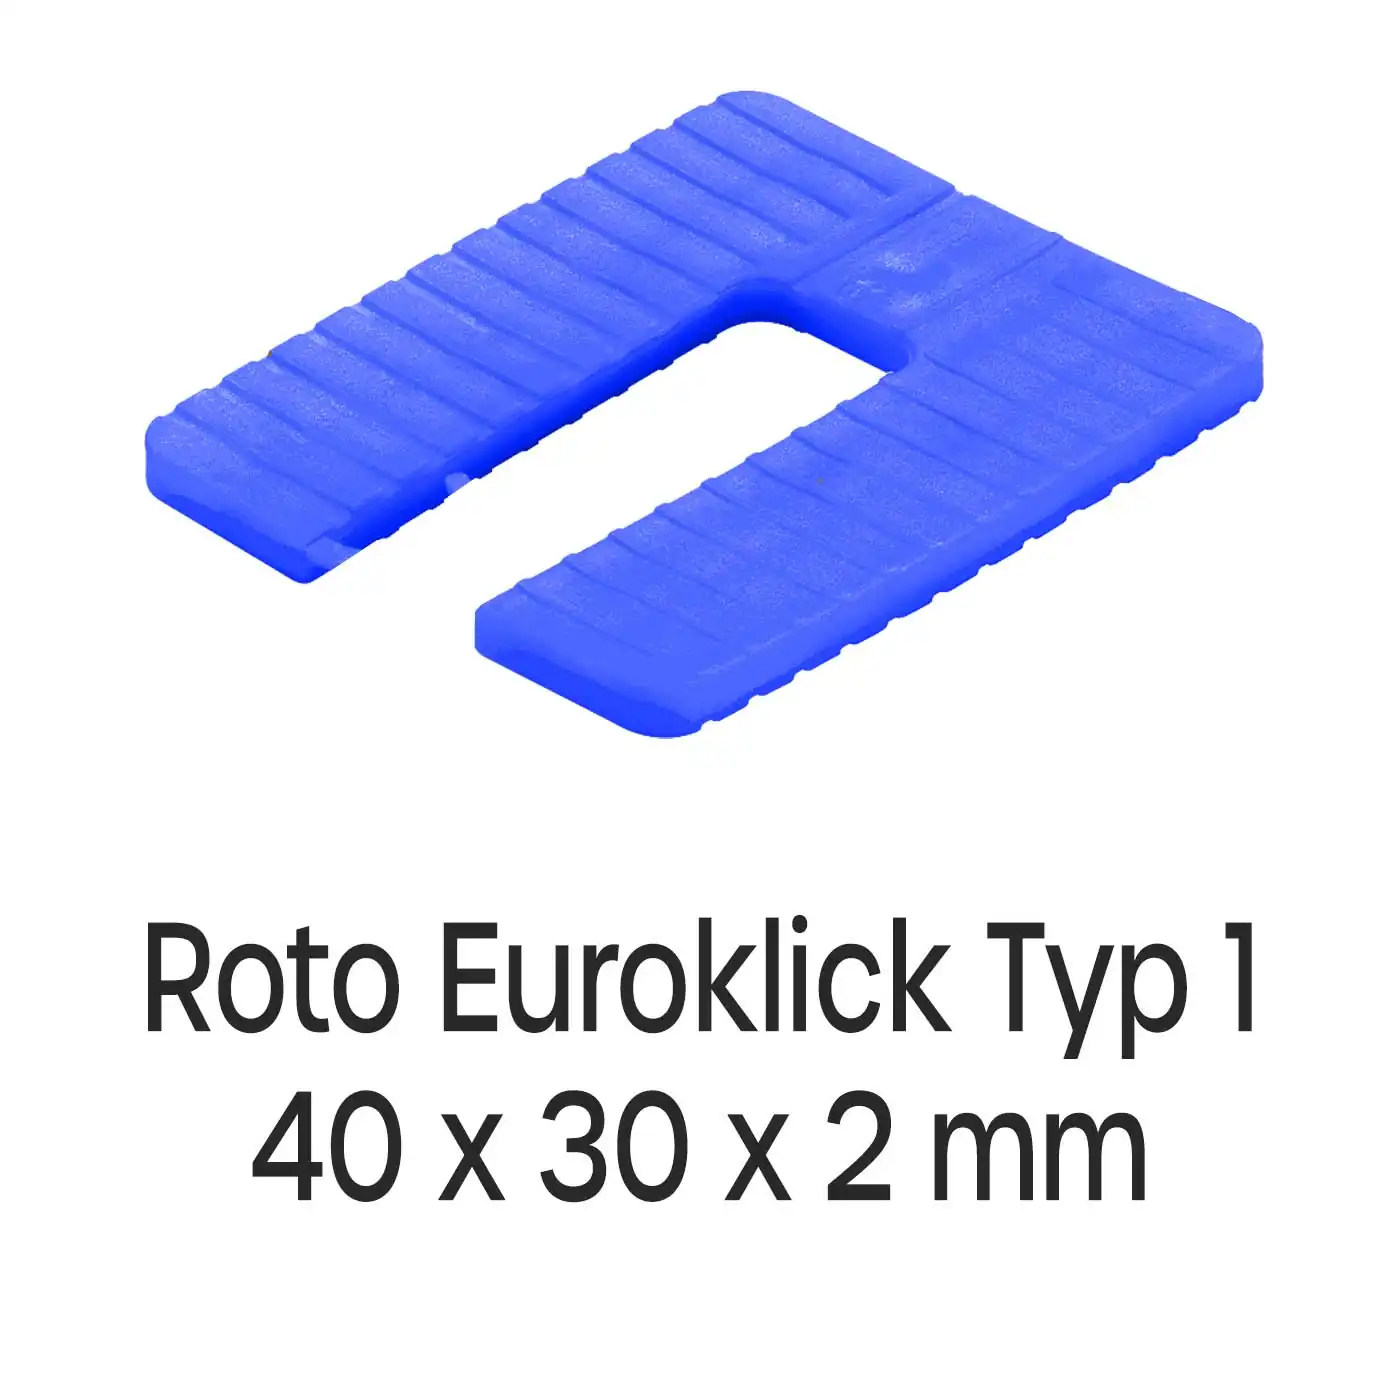 Distanzplatten Roto Euroklick Typ 1 40 x 30 x 2 mm 1000 Stück